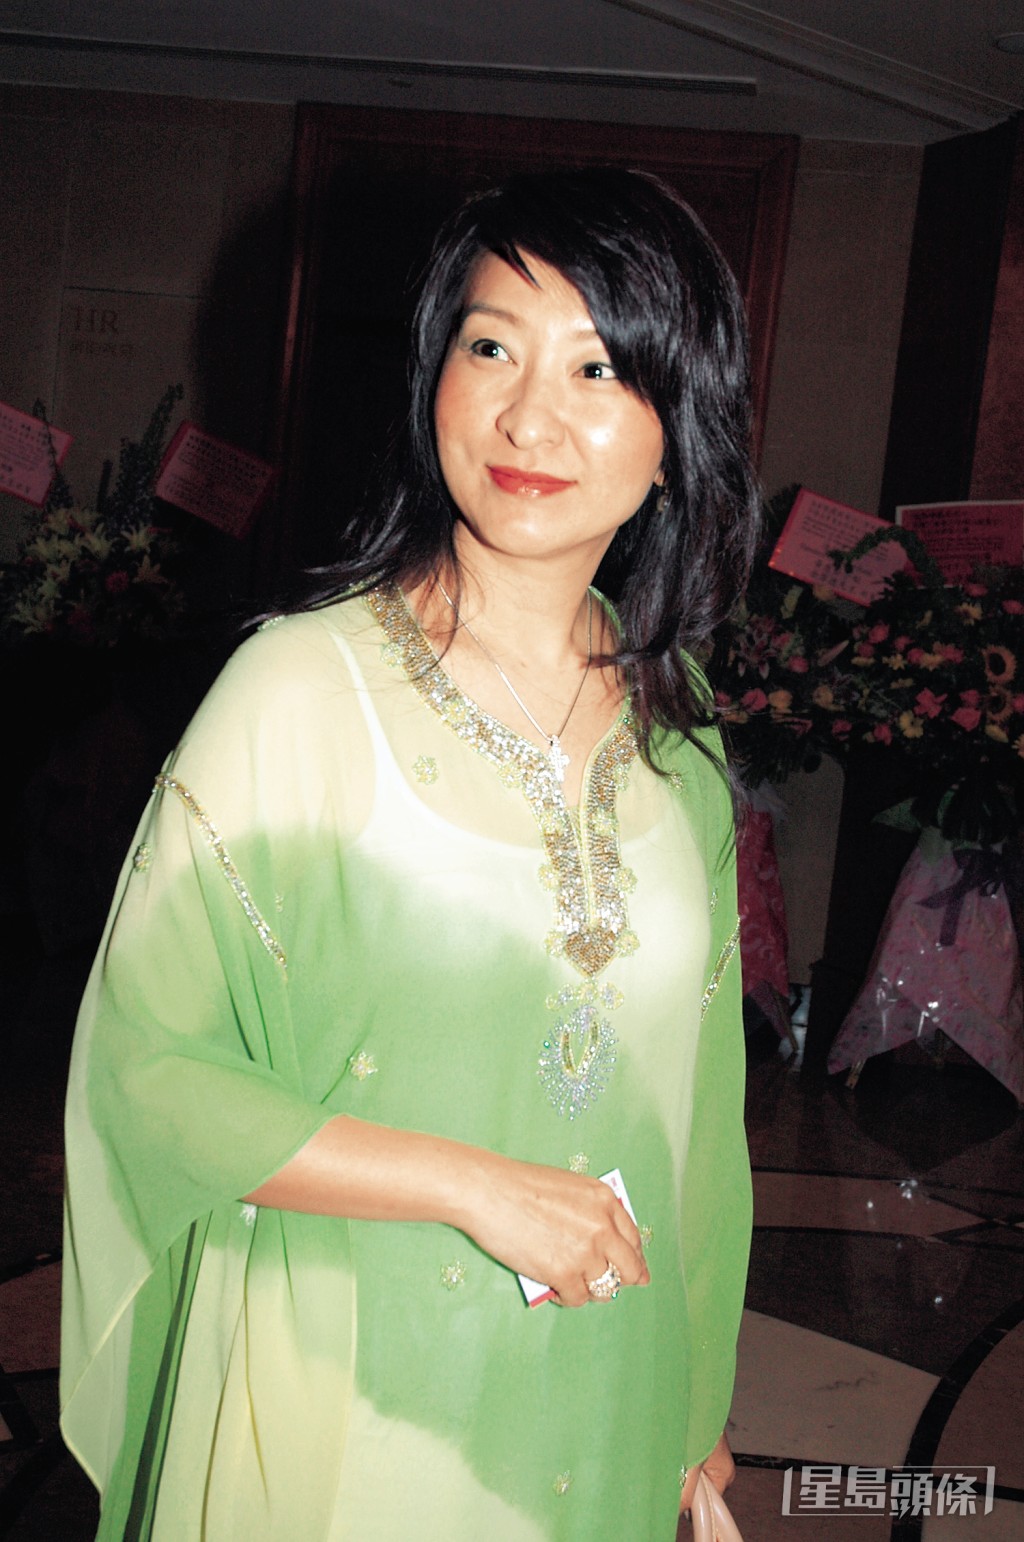 蔣麗萍是震雄集團創辦人蔣震的三女兒。